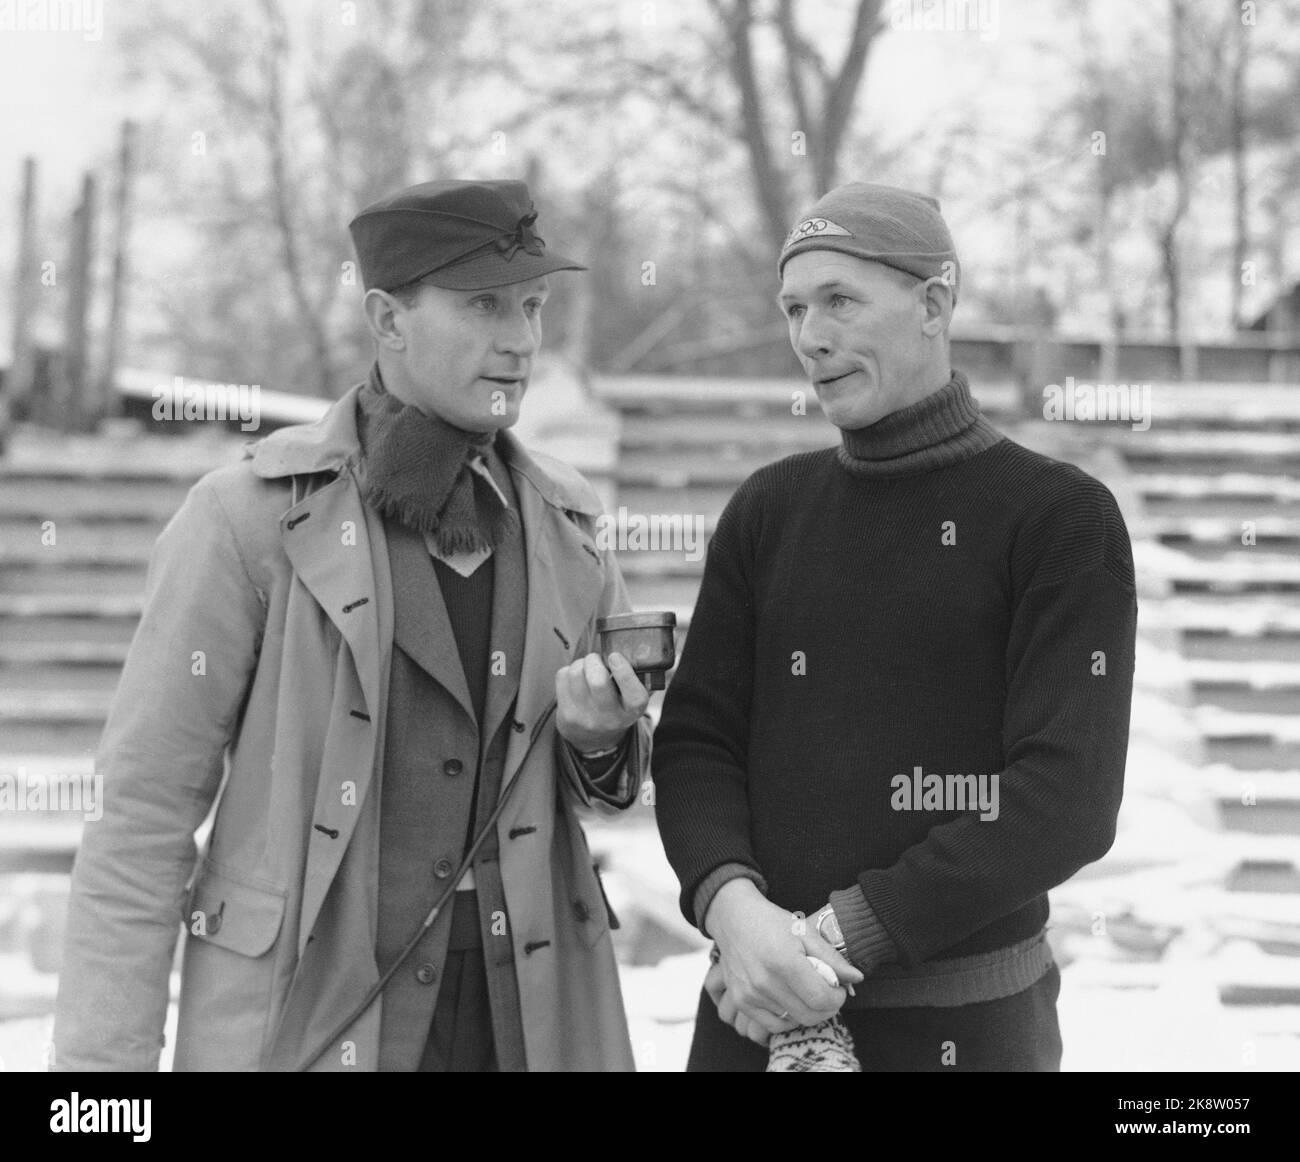 Oslo 19411221 Skater Hans Engnestangen (TH) è intervistato dal reporter radiofonico Sørli allo Stadio Frogner. Sørli tiene in mano un microfono. Engnestangen (1908 - 2003) ha partecipato alle Olimpiadi 1932 e 1936, ma senza vincere alcuna distanza. Nel 1938/1939 ha stabilito record mondiali di 500 metri e 1500 metri a Davos, che è stato battuto per la prima volta nei primi anni '50s. Foto: NTB / NTB Foto Stock